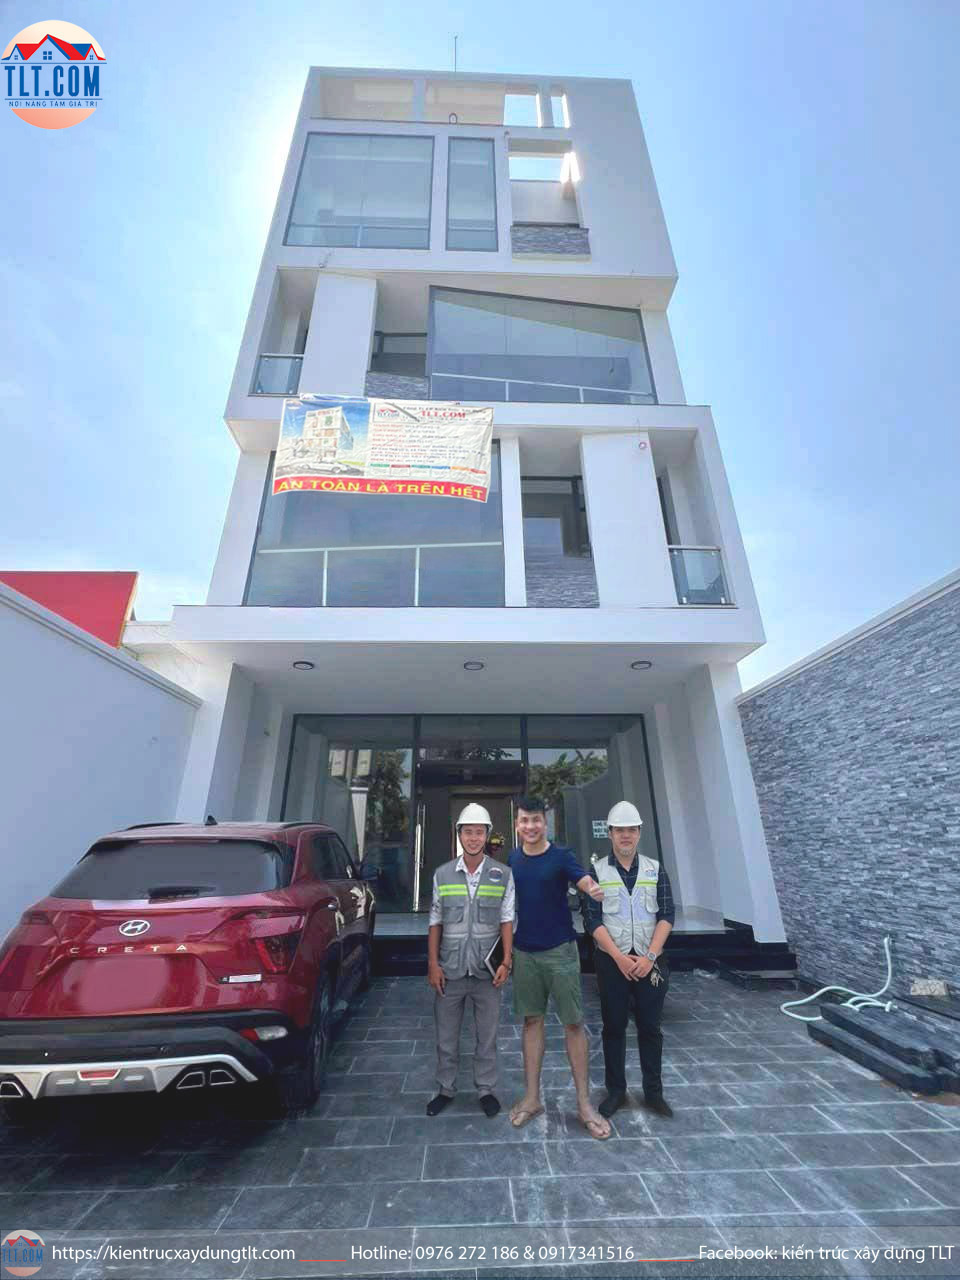 Bàn giao căn nhà phố 4.5 tầng sân thượng cho gia đình chị Hà tại Hóc Môn